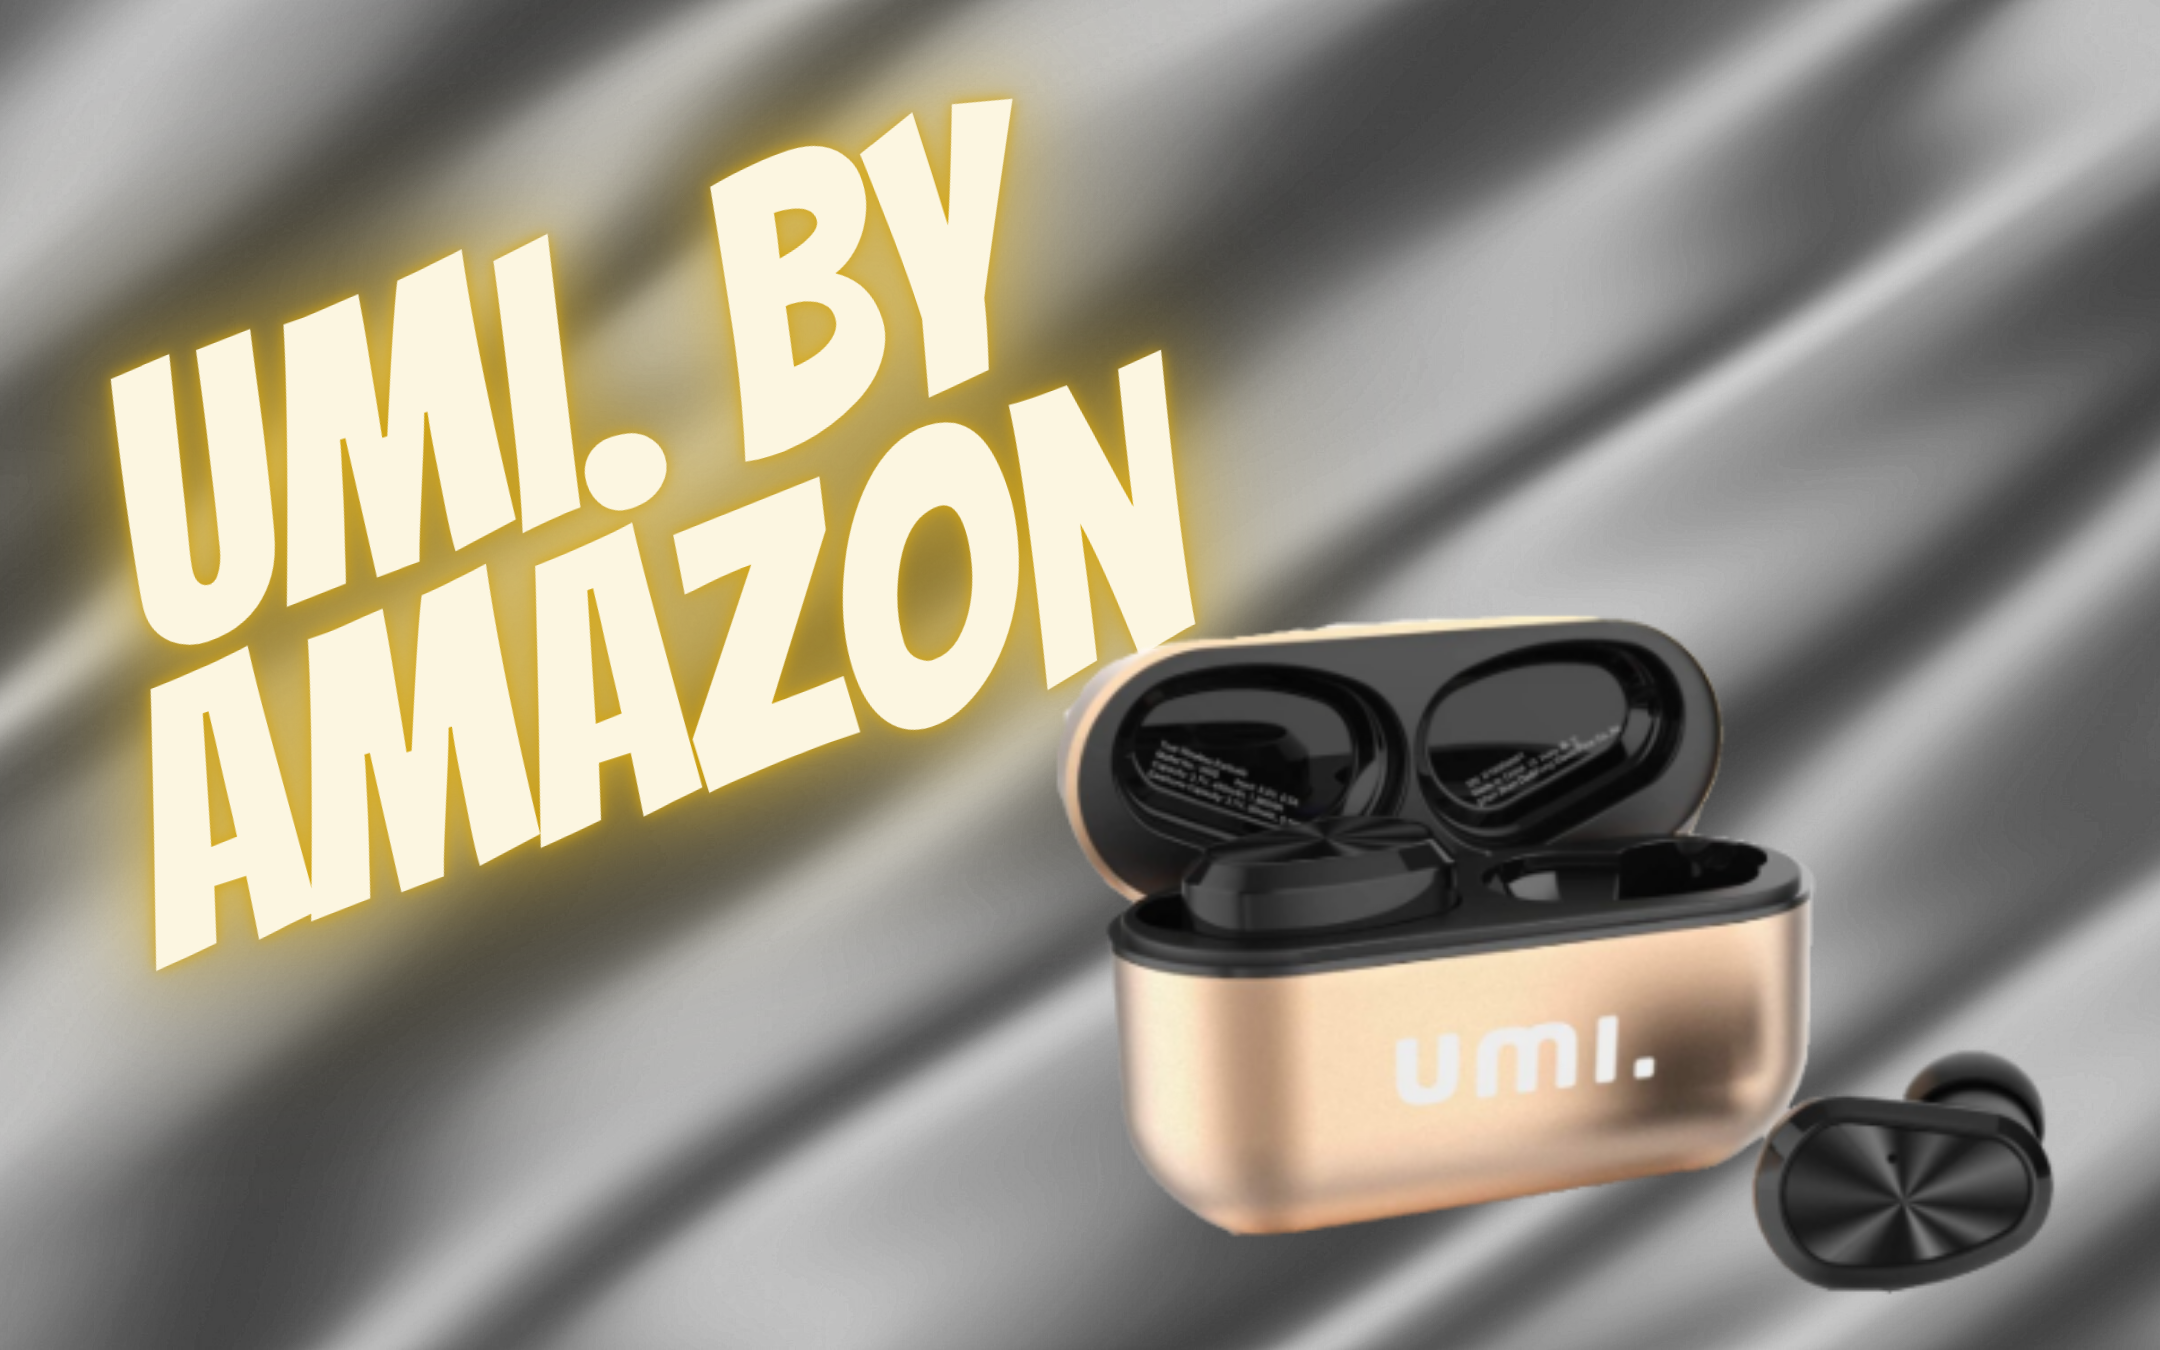 Cuffie TWS Umi.by Amazon a poco più di 20€